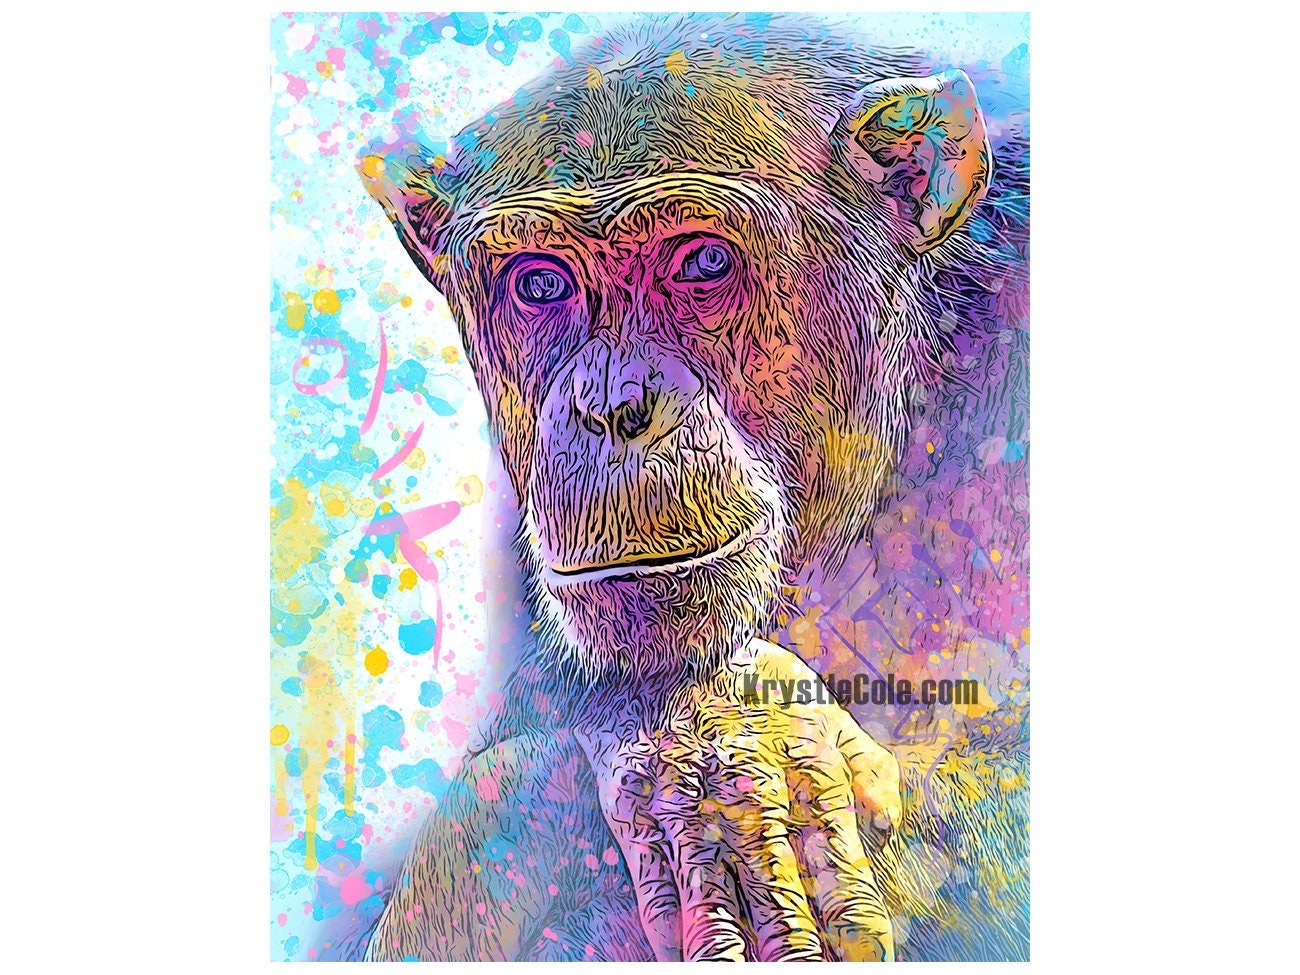 The Monkey Marketplace Art Print